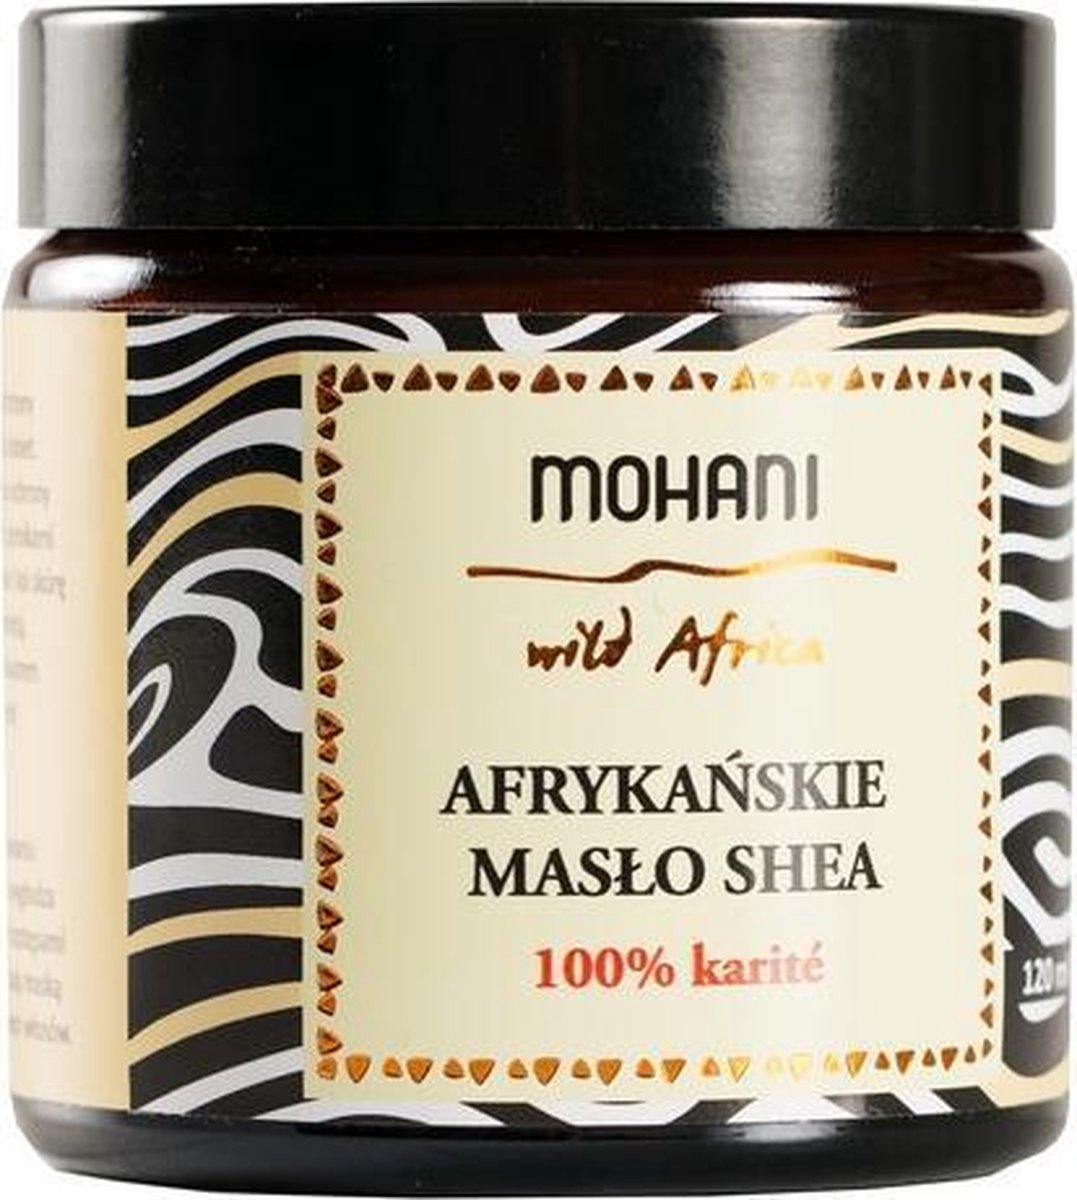 Mohani - Wild Africa afrykańskie masło shea do ciała 100g